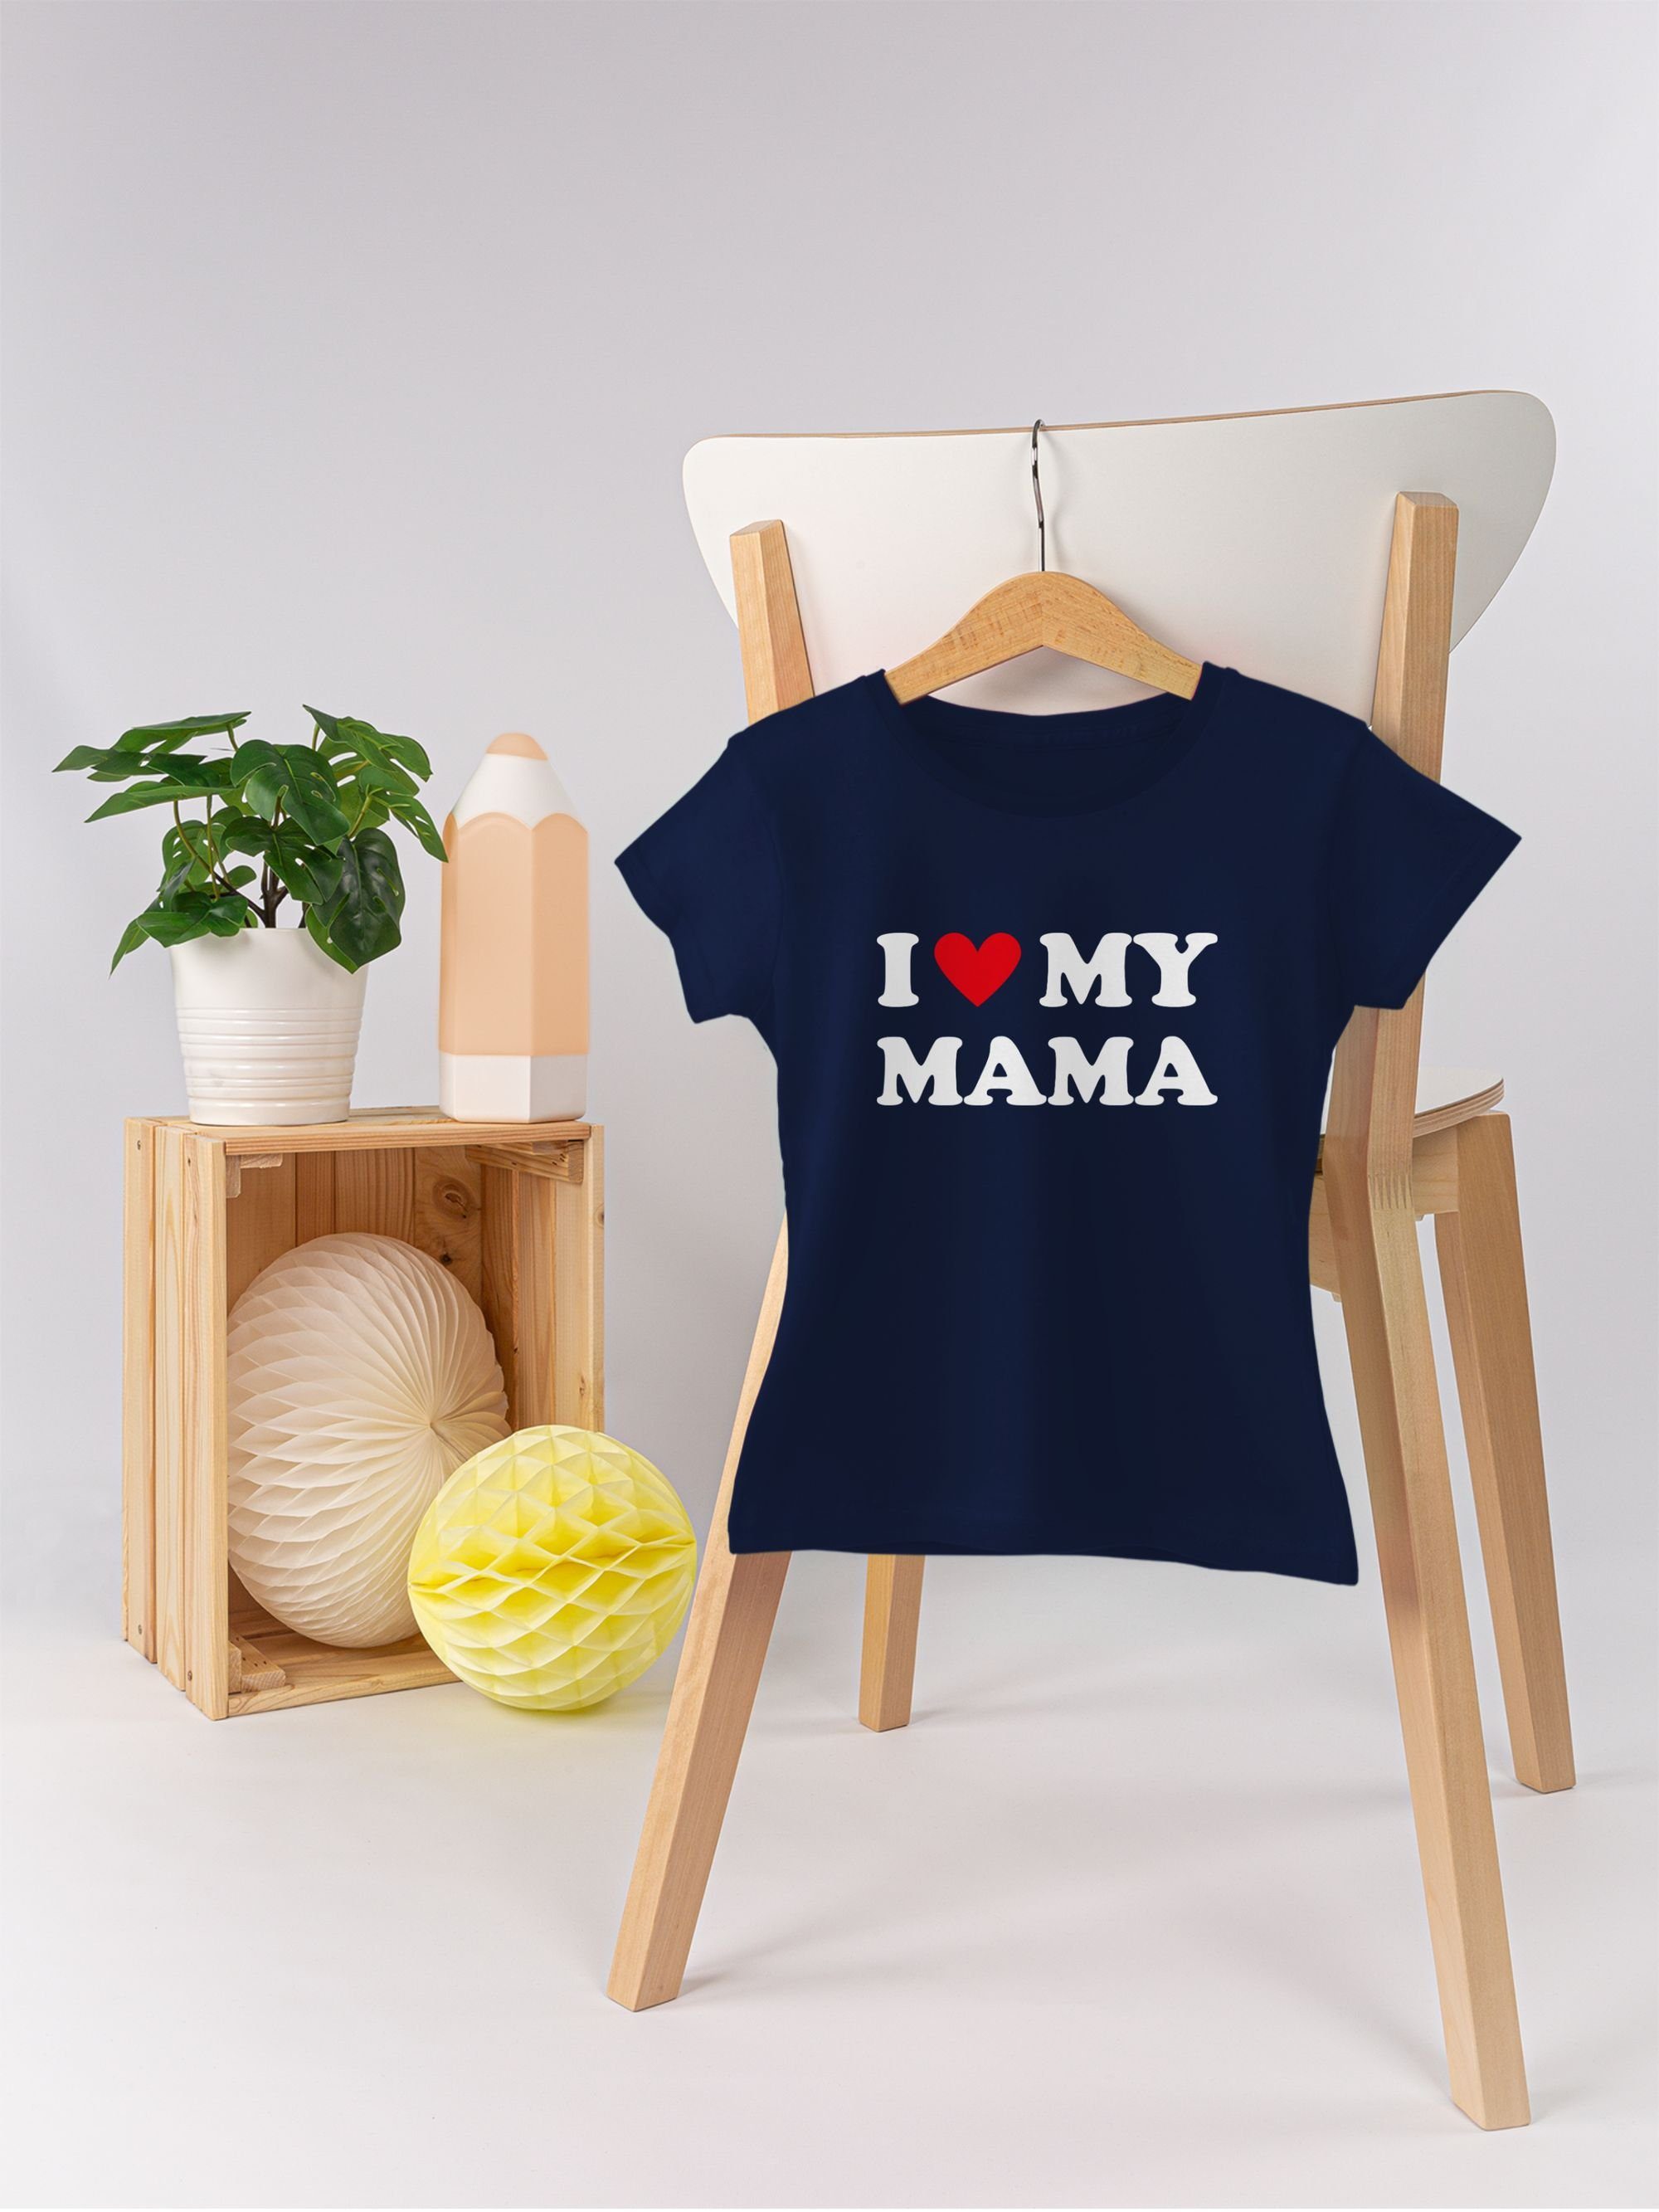 Mum 3 I T-Shirt Muttertagsgeschenk love Mama Dunkelblau - my Shirtracer